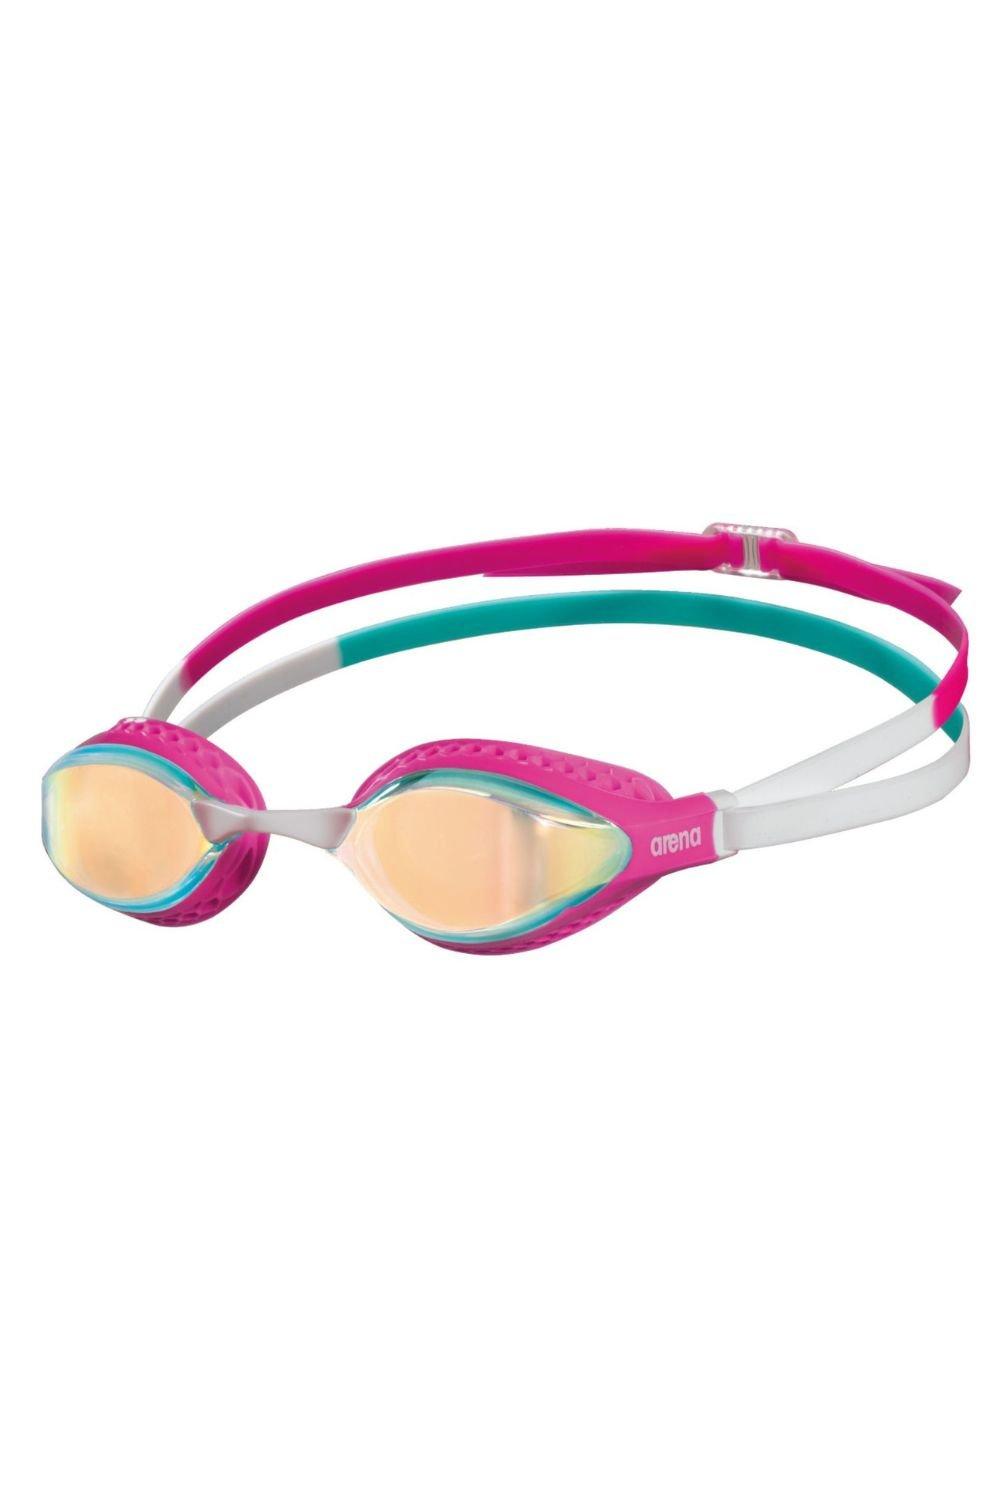 Очки для плавания с зеркалом Airspeed Arena, розовый 361 зеркальные очки для плавания по рецепту очки для плавания в бассейне противотуманные водонепроницаемые розовые очки для мужчин женщи